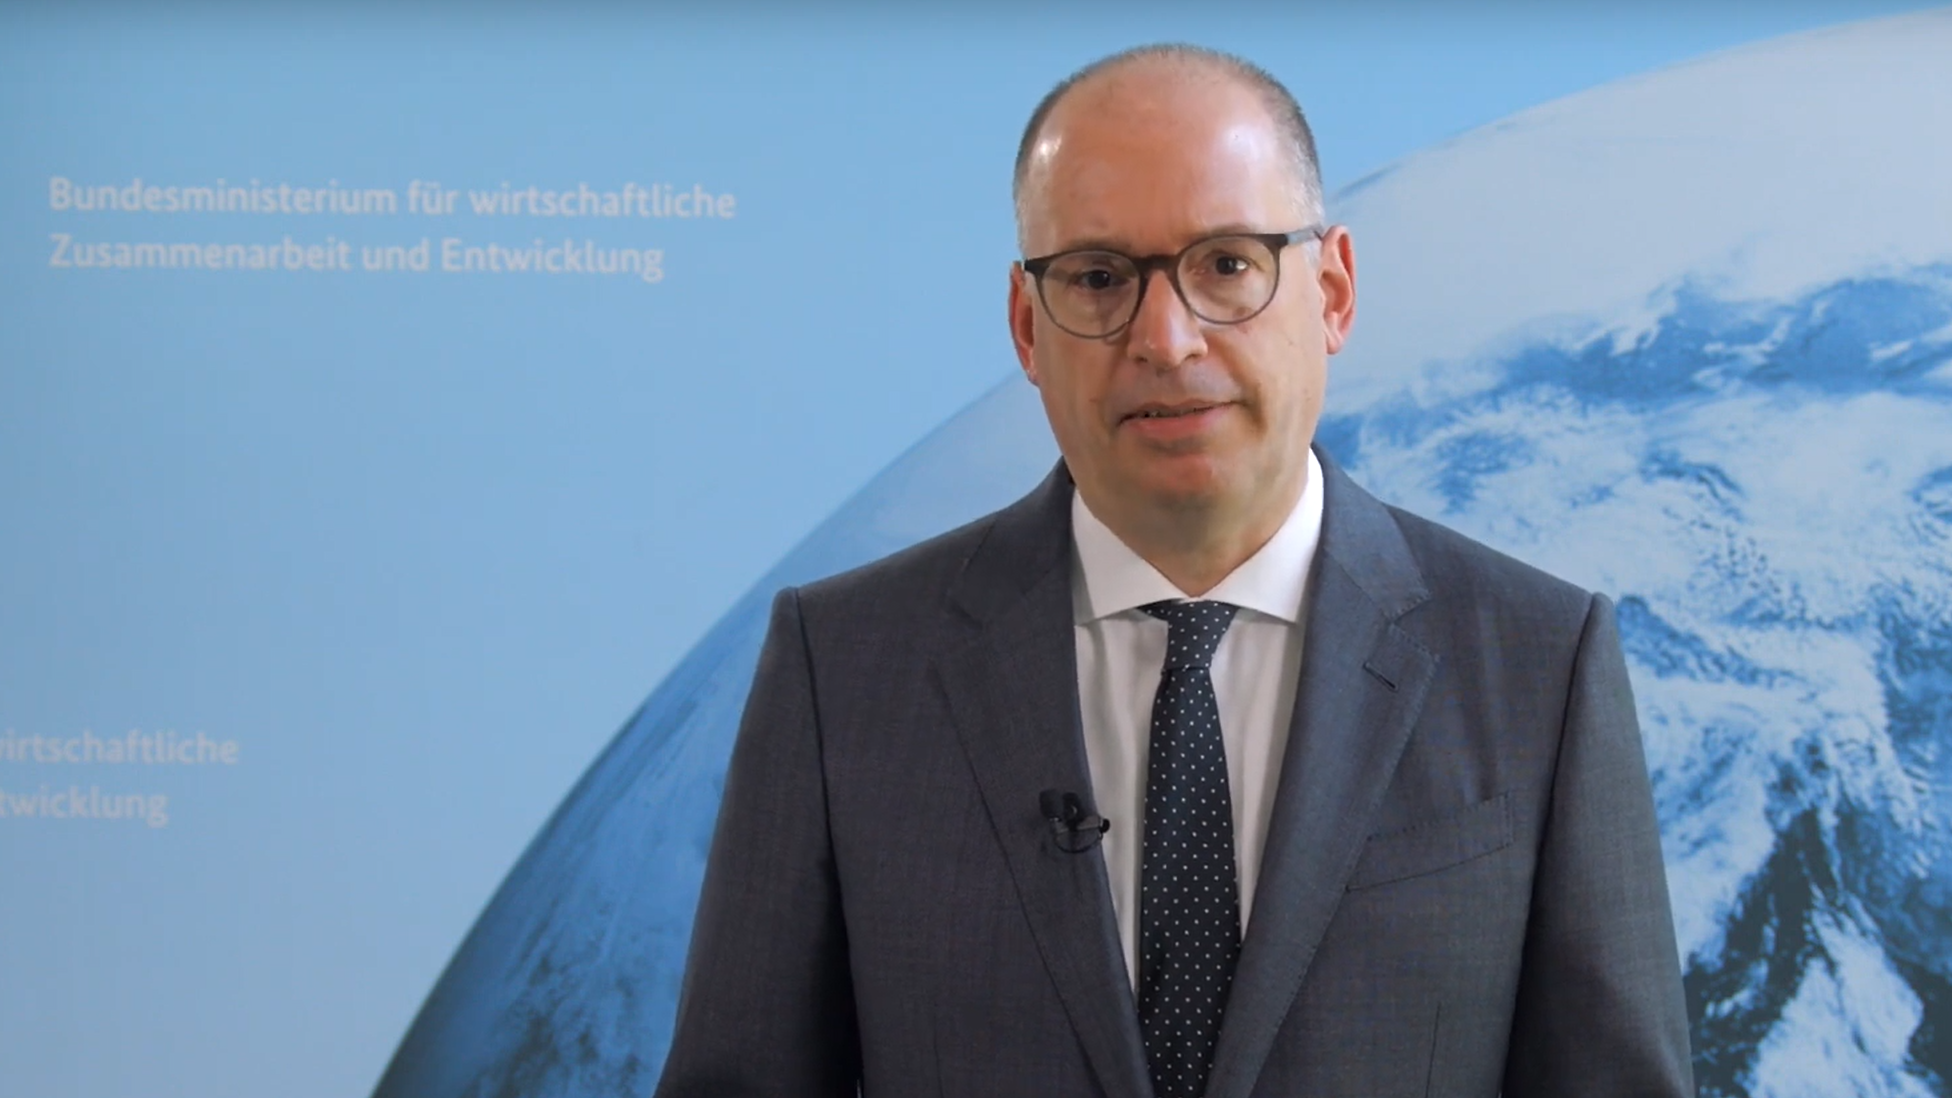 Standbild aus dem Video des Parlamentarischen Staatssekretärs Niels Annen